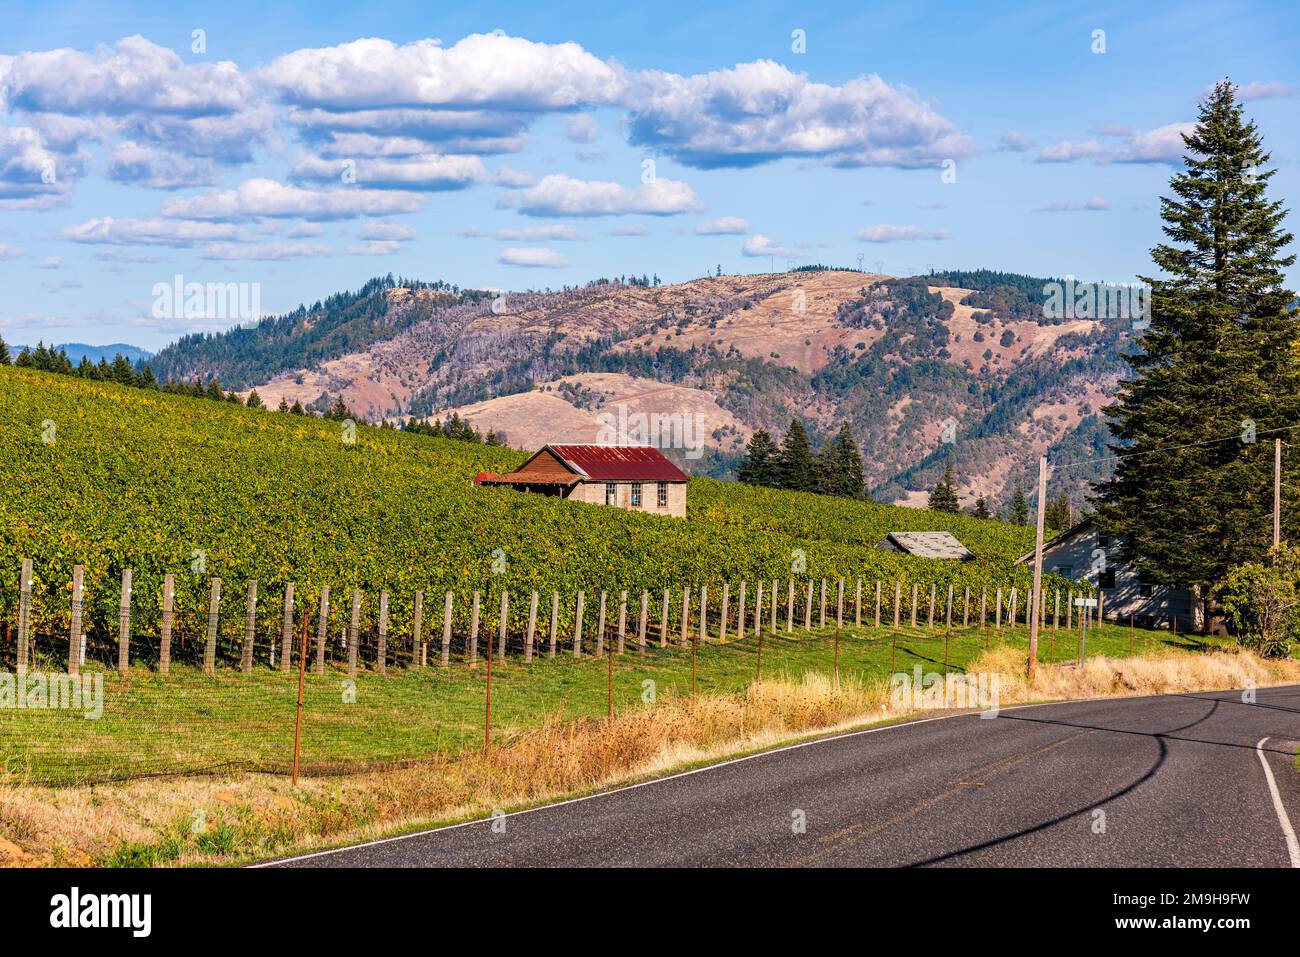 Vigne sul lato della strada e delle montagne, Washington state, USA Foto Stock